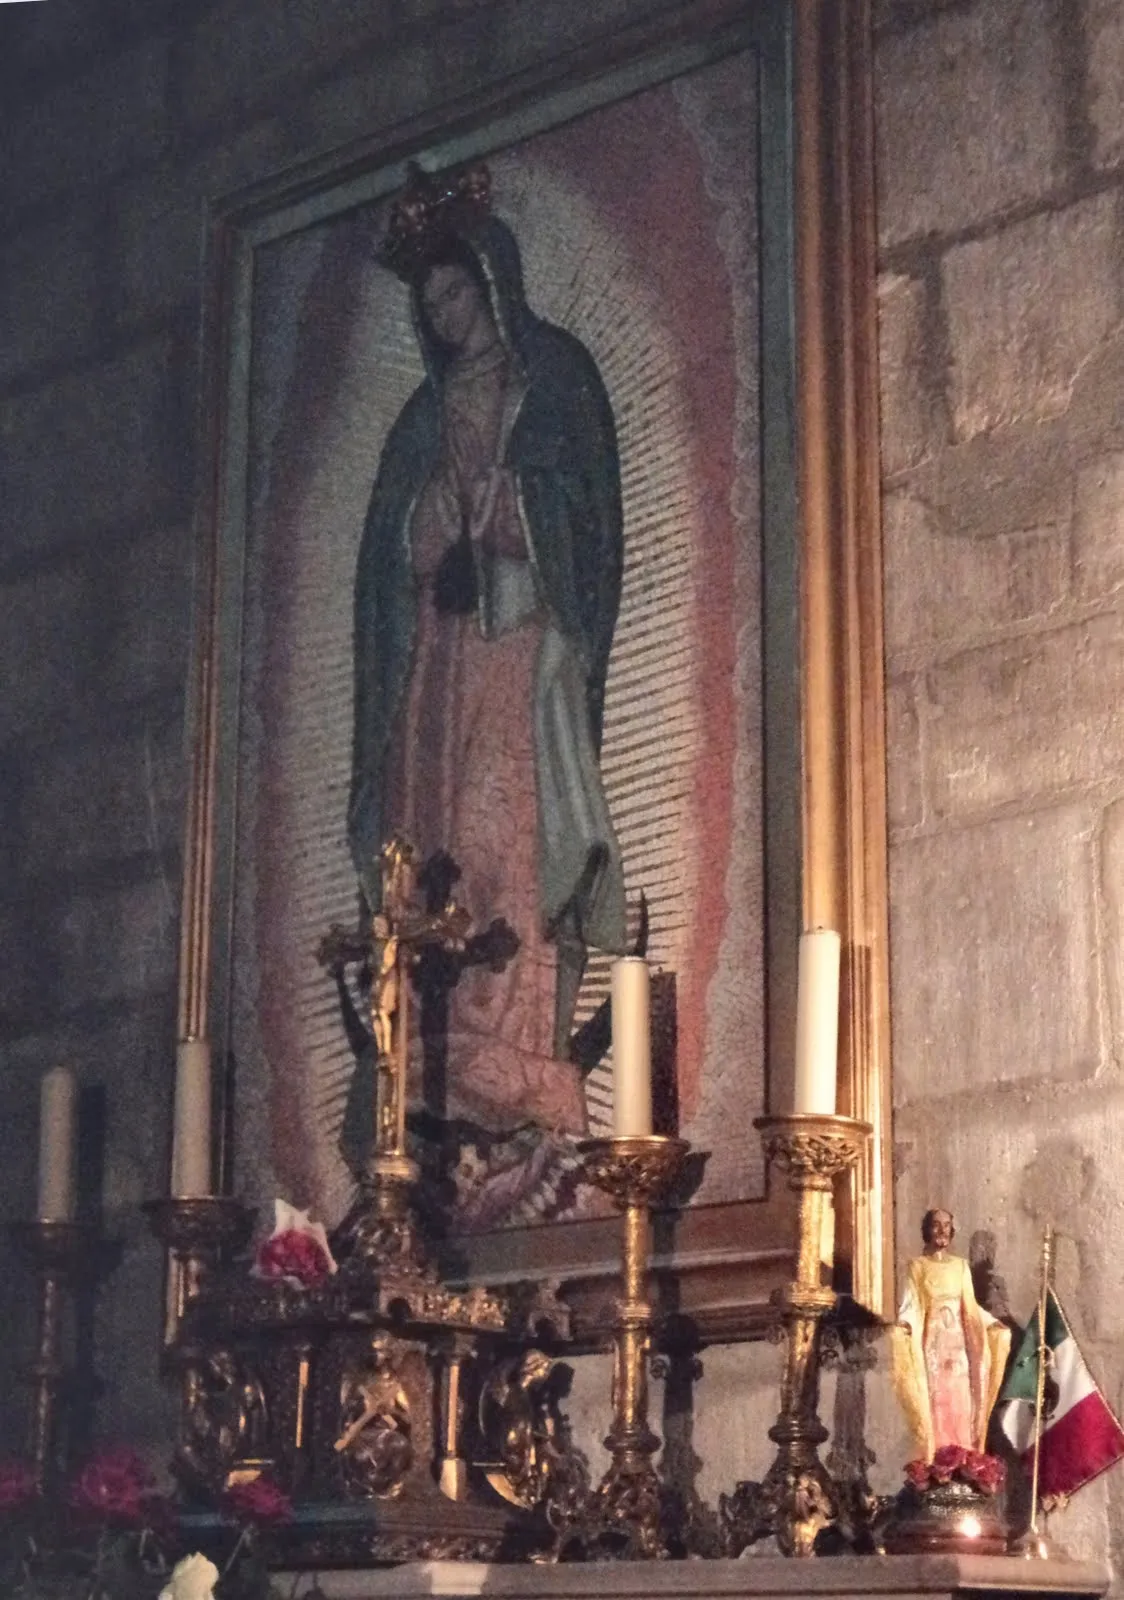  ... de La Vida: Capilla de la Virgen de Guadalupe en Notre Dame de París